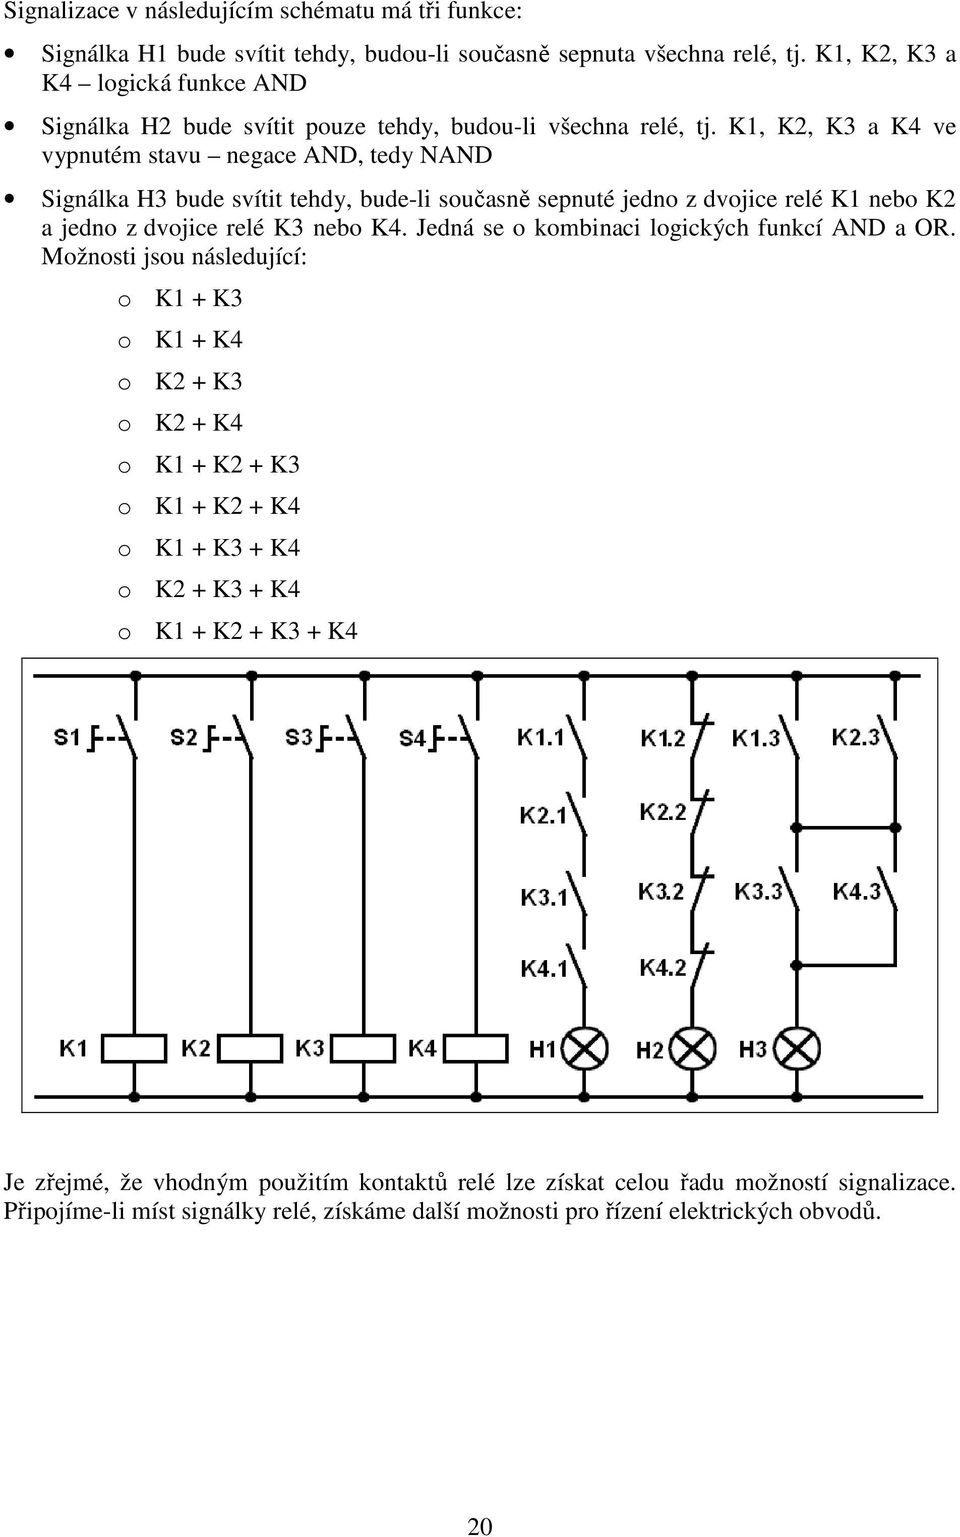 K1, K2, K3 a K4 ve vypnutém stavu negace AND, tedy NAND Signálka H3 bude svítit tehdy, bude-li současně sepnuté jedno z dvojice relé K1 nebo K2 a jedno z dvojice relé K3 nebo K4.